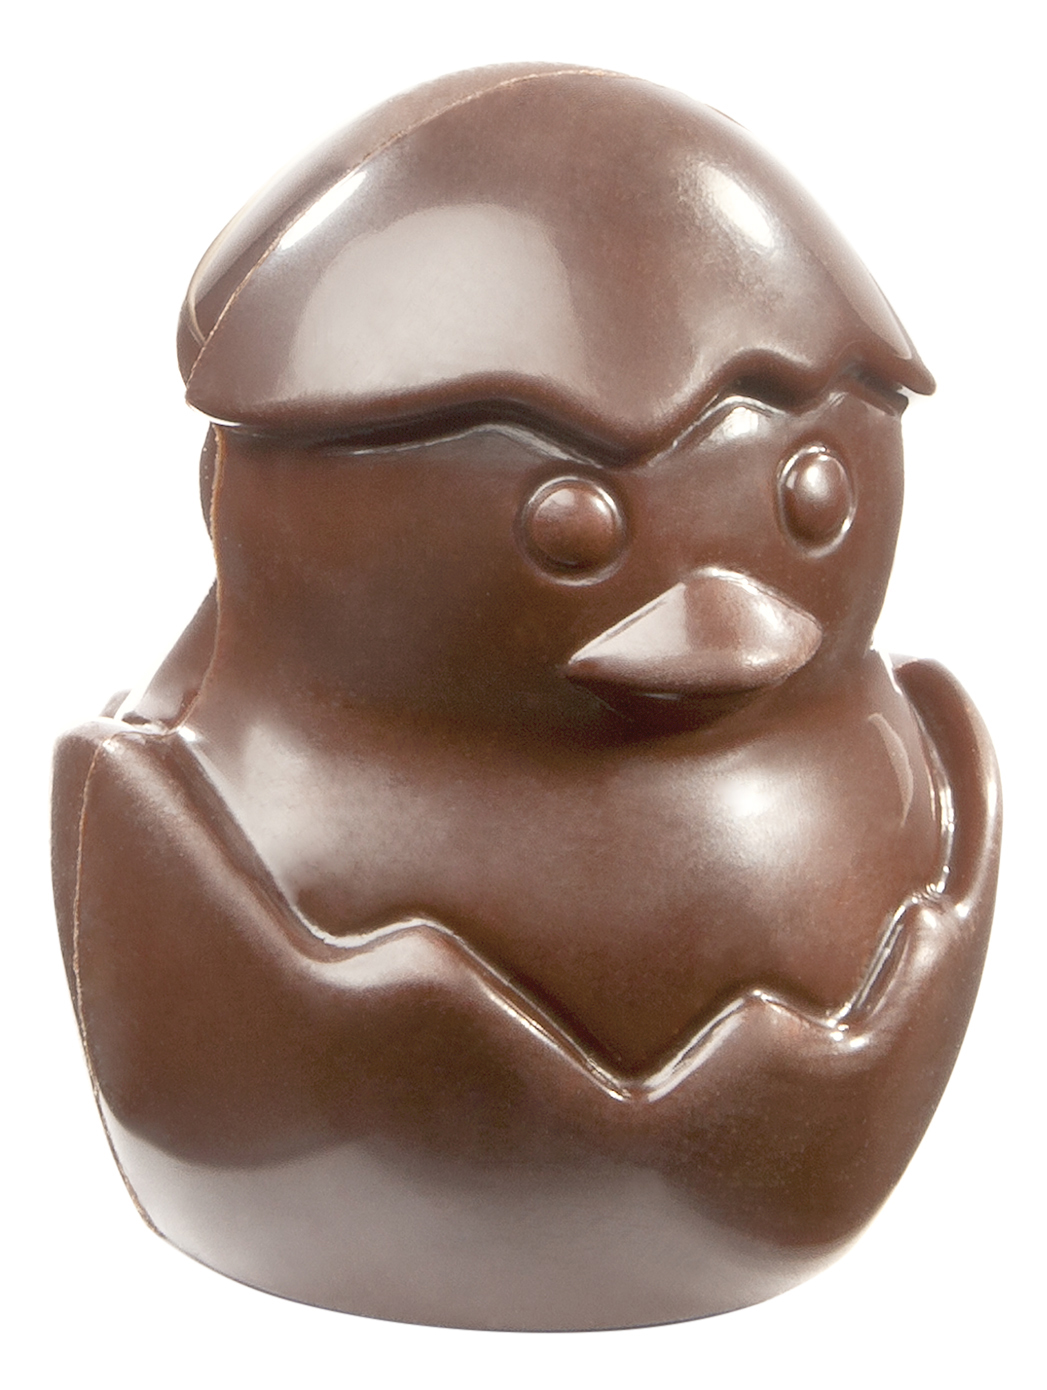 Se Professionel chokoladeform i polycarbonat - Chick in Egg CW1786 hos BageTid.dk